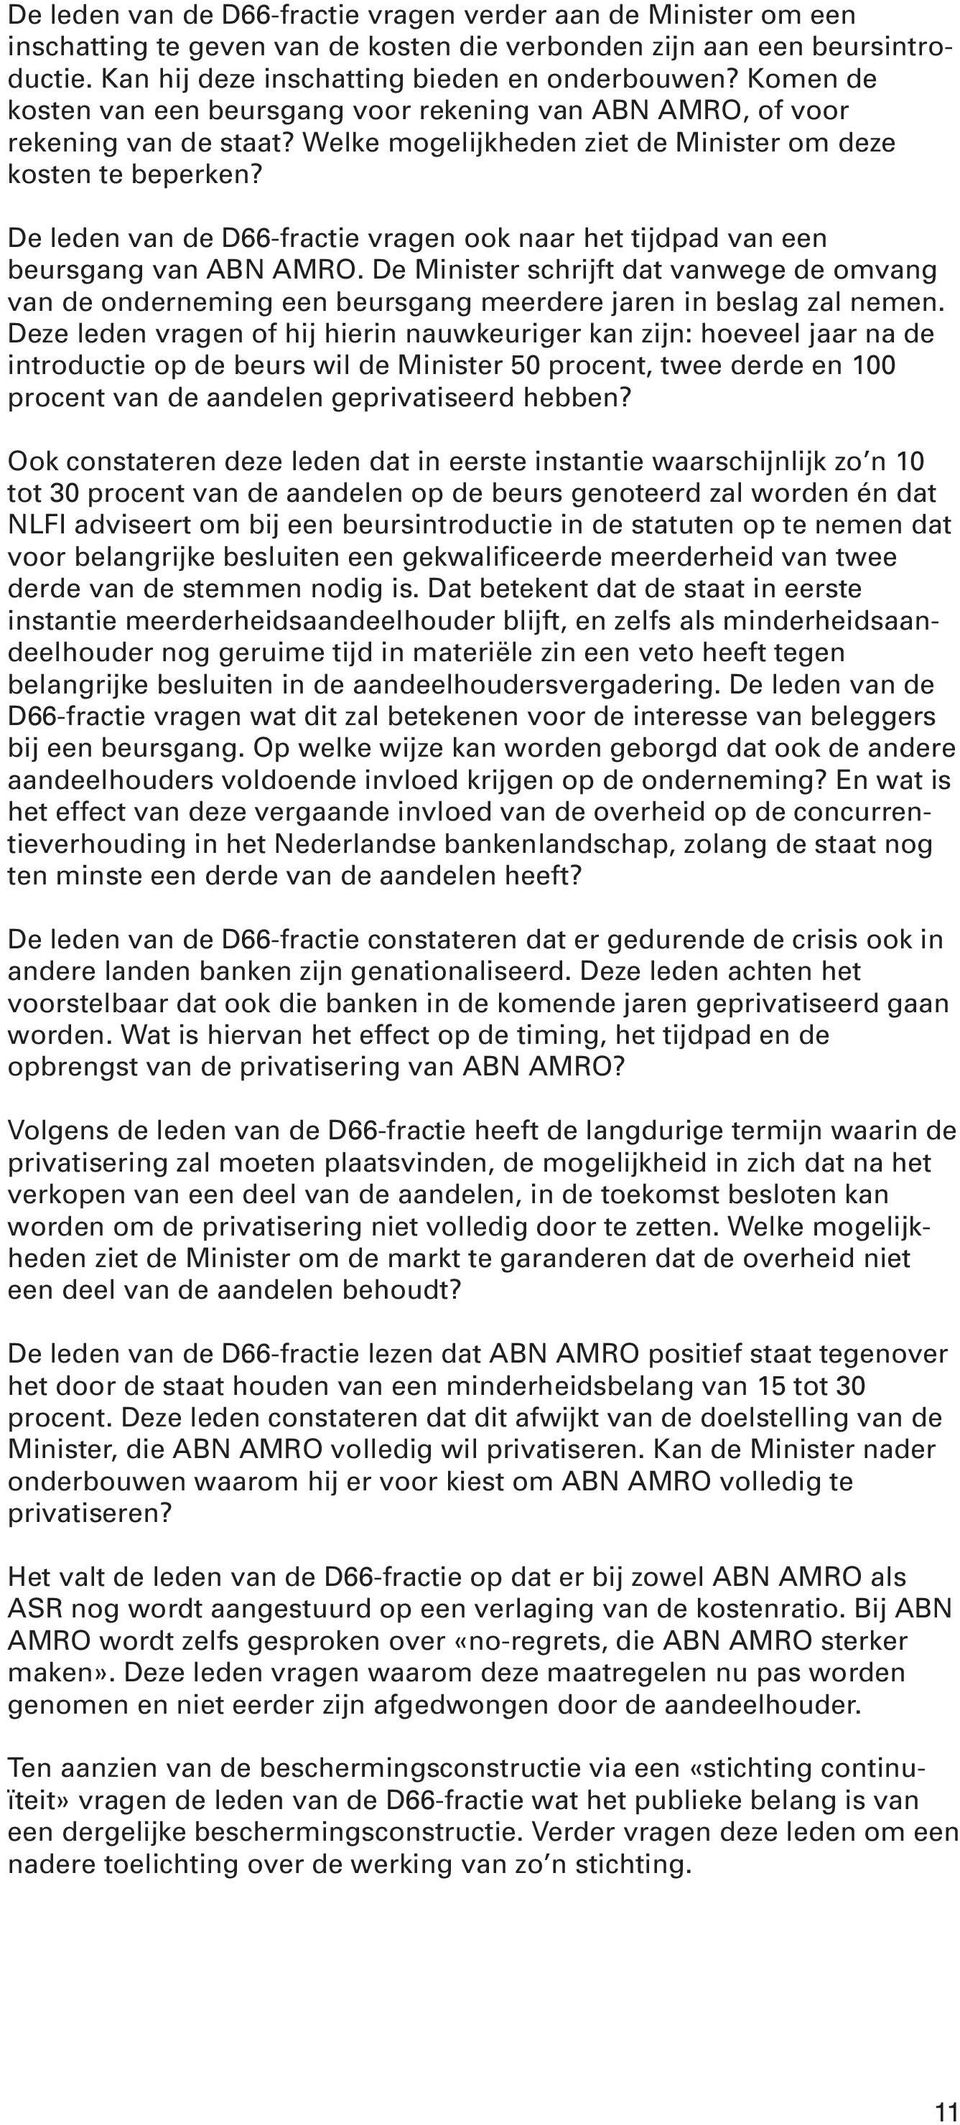 De leden van de D66-fractie vragen ook naar het tijdpad van een beursgang van ABN AMRO. De Minister schrijft dat vanwege de omvang van de onderneming een beursgang meerdere jaren in beslag zal nemen.